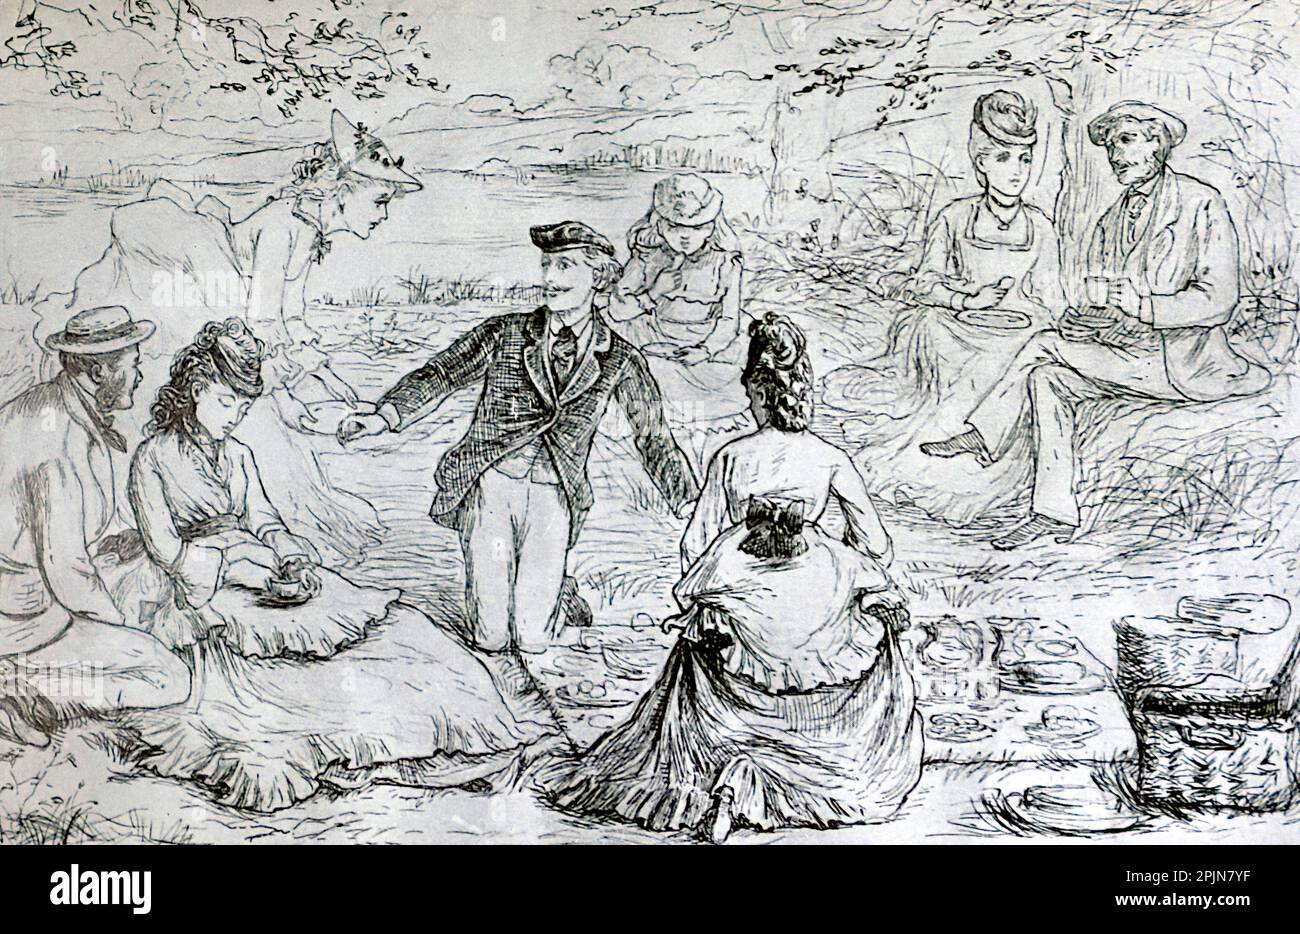 Il picnic, illustrazione di una penna e inchiostro del libro Kate Greenaway di M.H. Spielmann e G.S. Layard. Pubblicato da Adam e Charles, 1905. Foto Stock